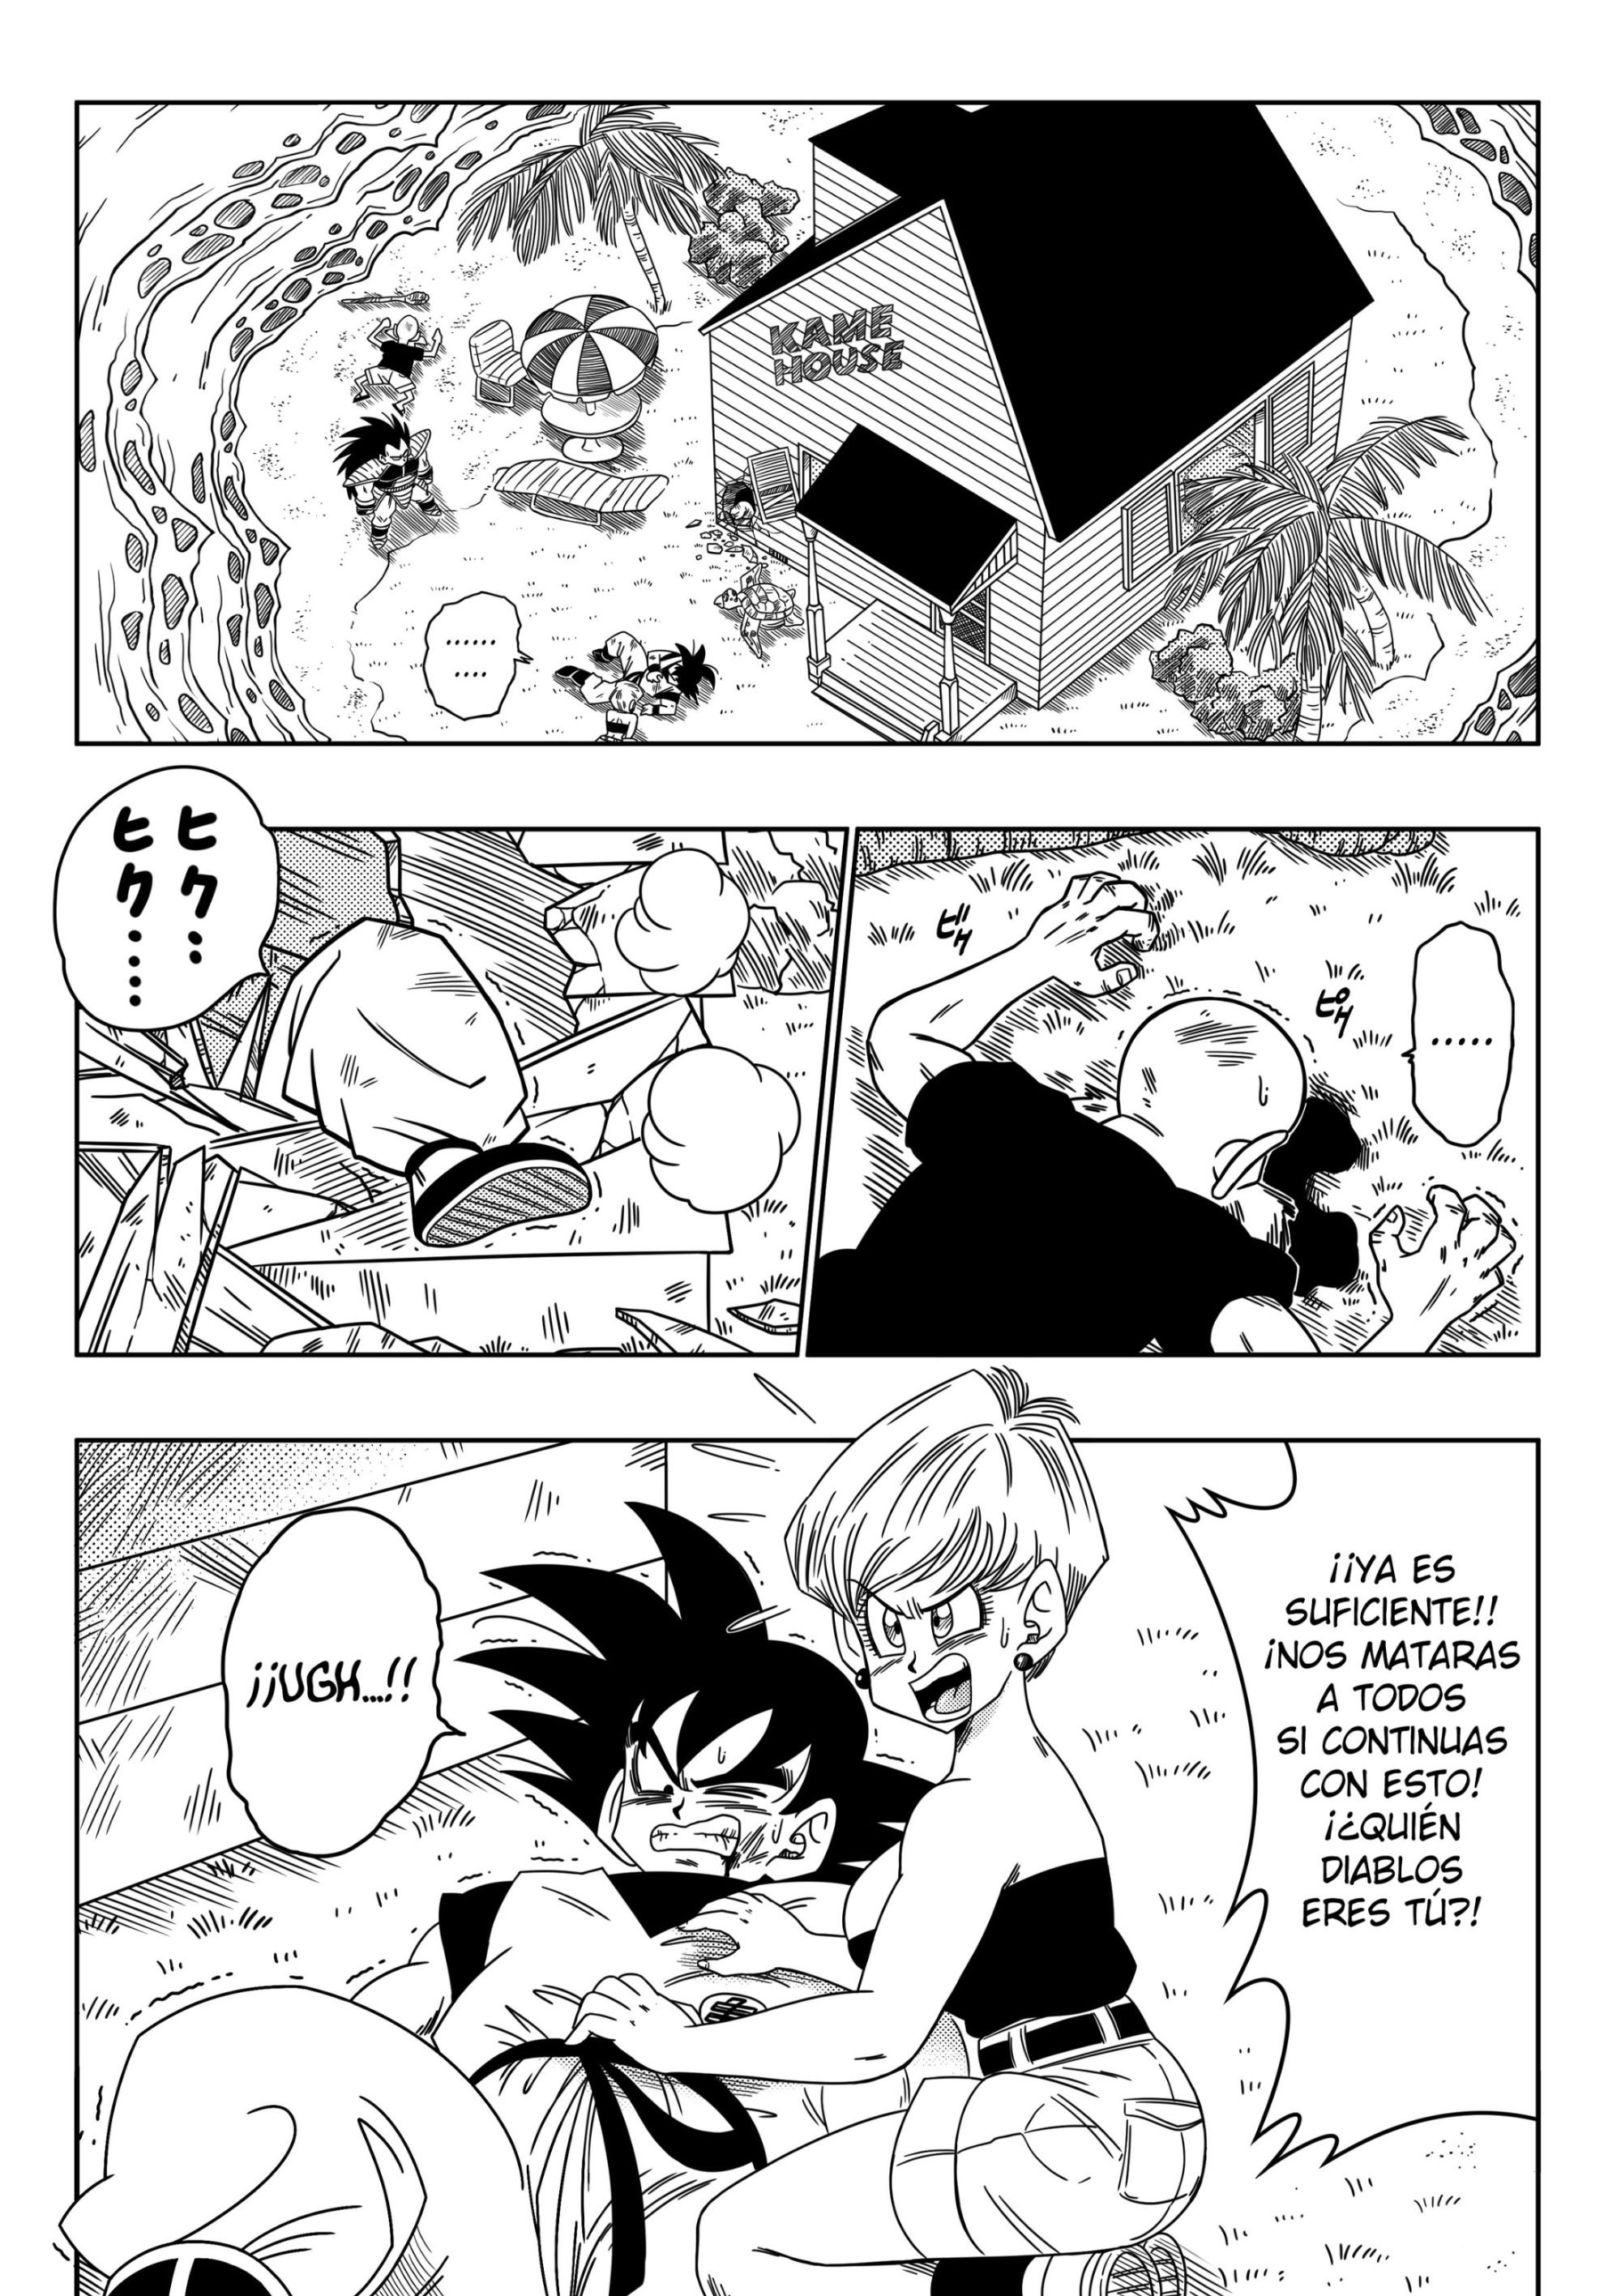 El hermano de Goku - 1